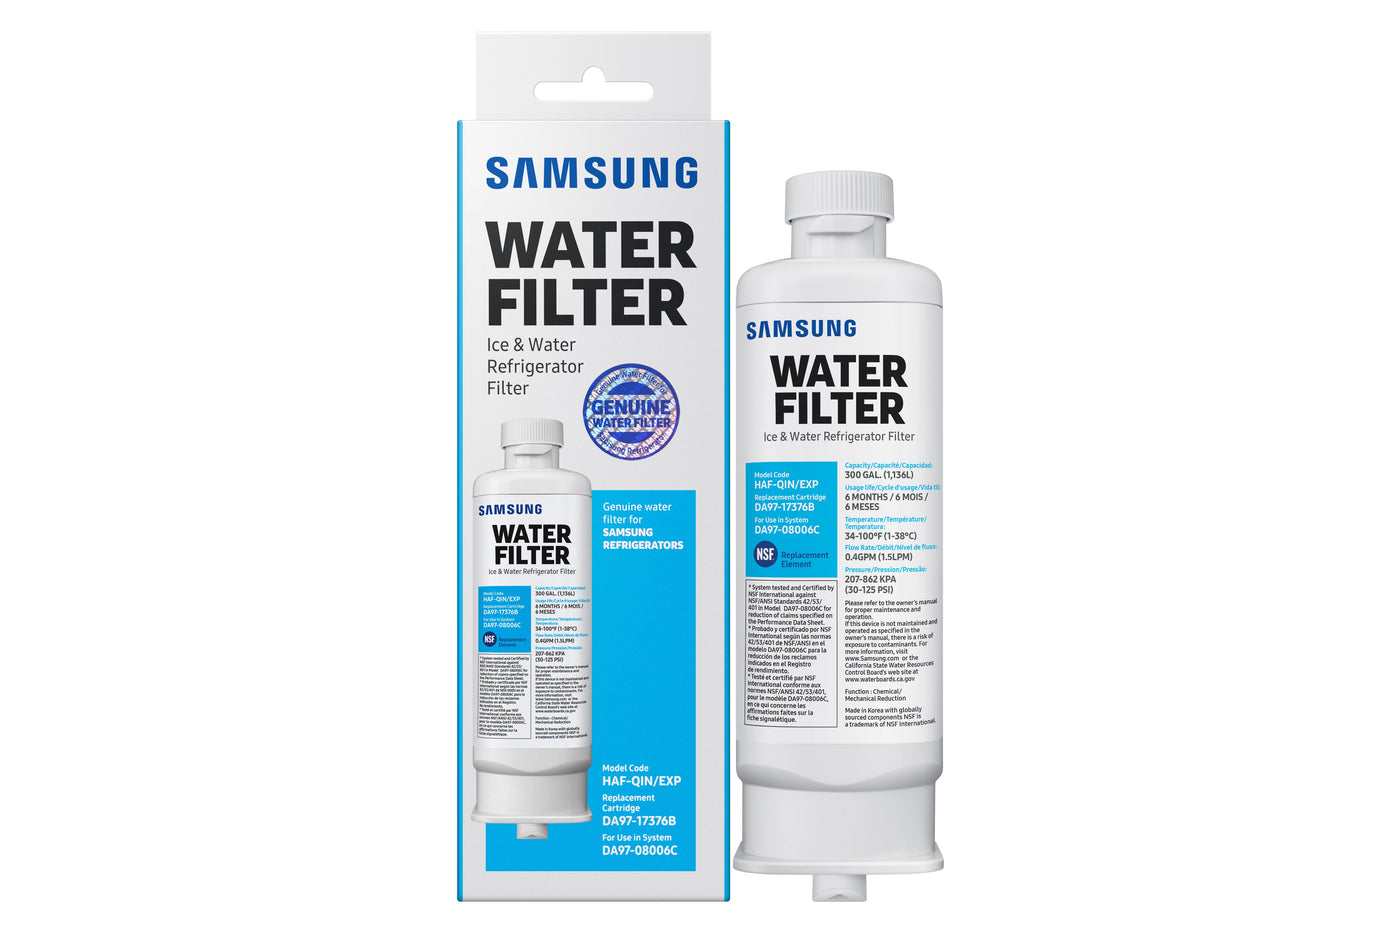 Samsung Water Filter - HAF-QIN/EXP